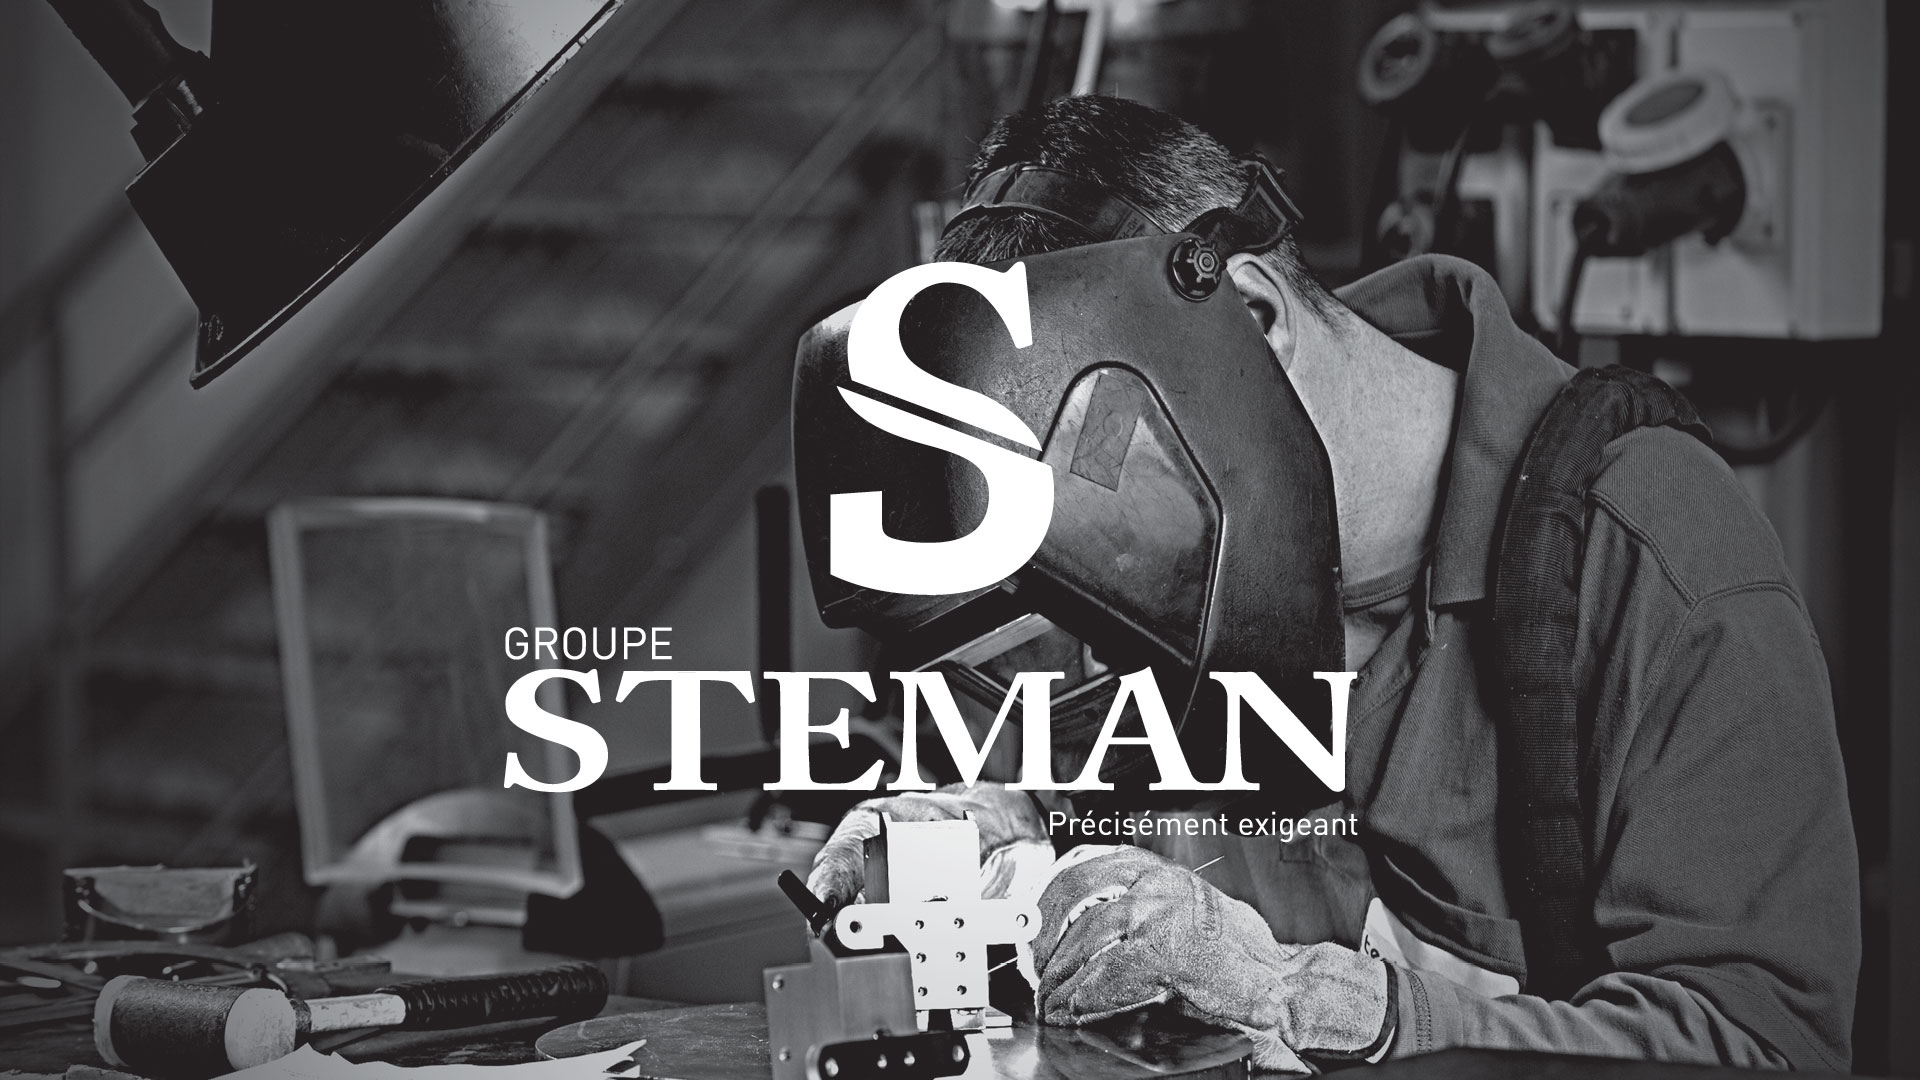 Mise en situation du logo Steman